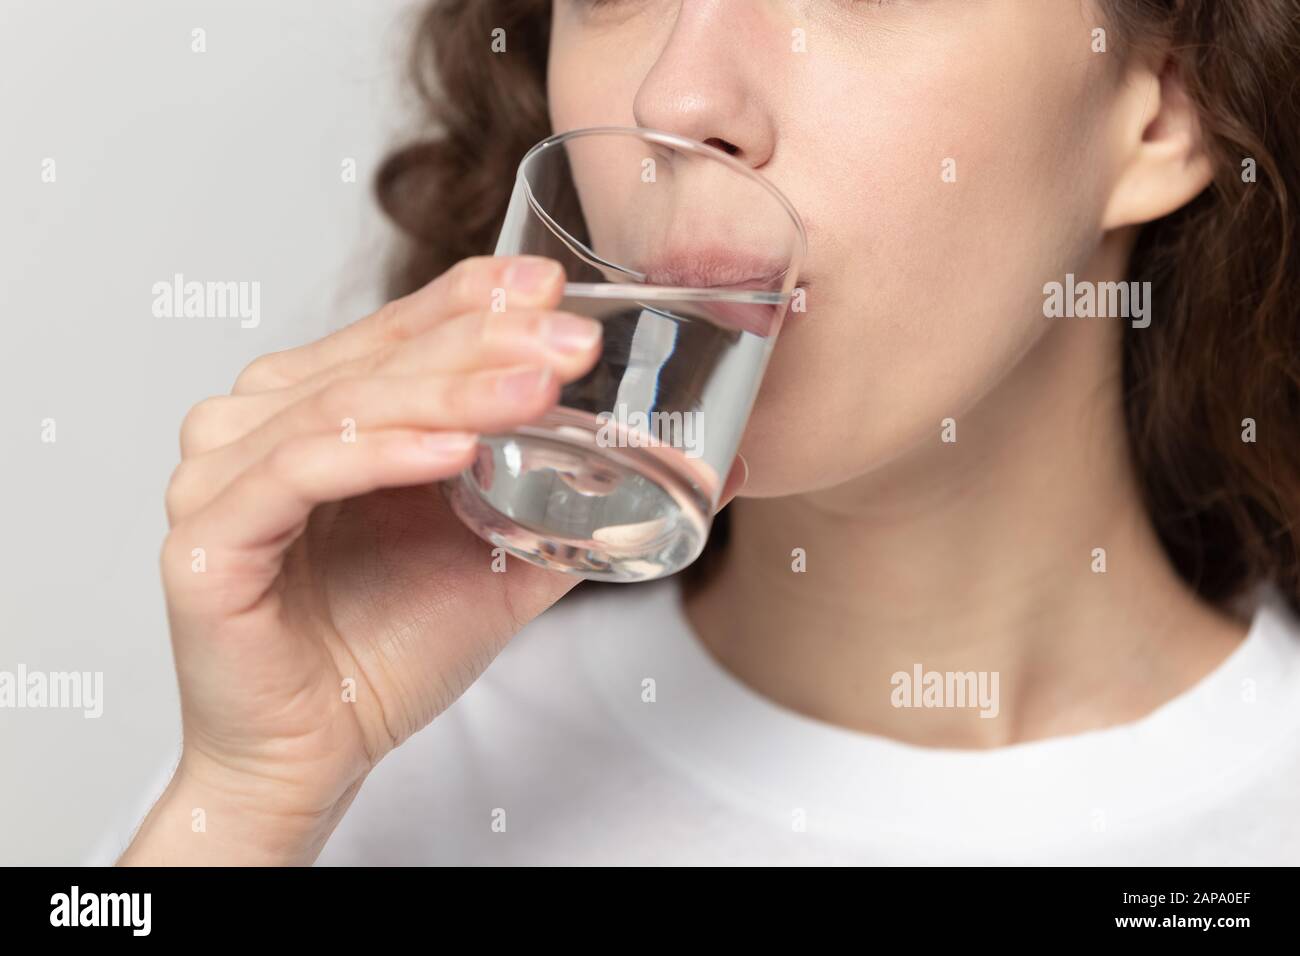 Schließen Sie junge gesunde Frau, die Glas Wasser trinkt. Stockfoto